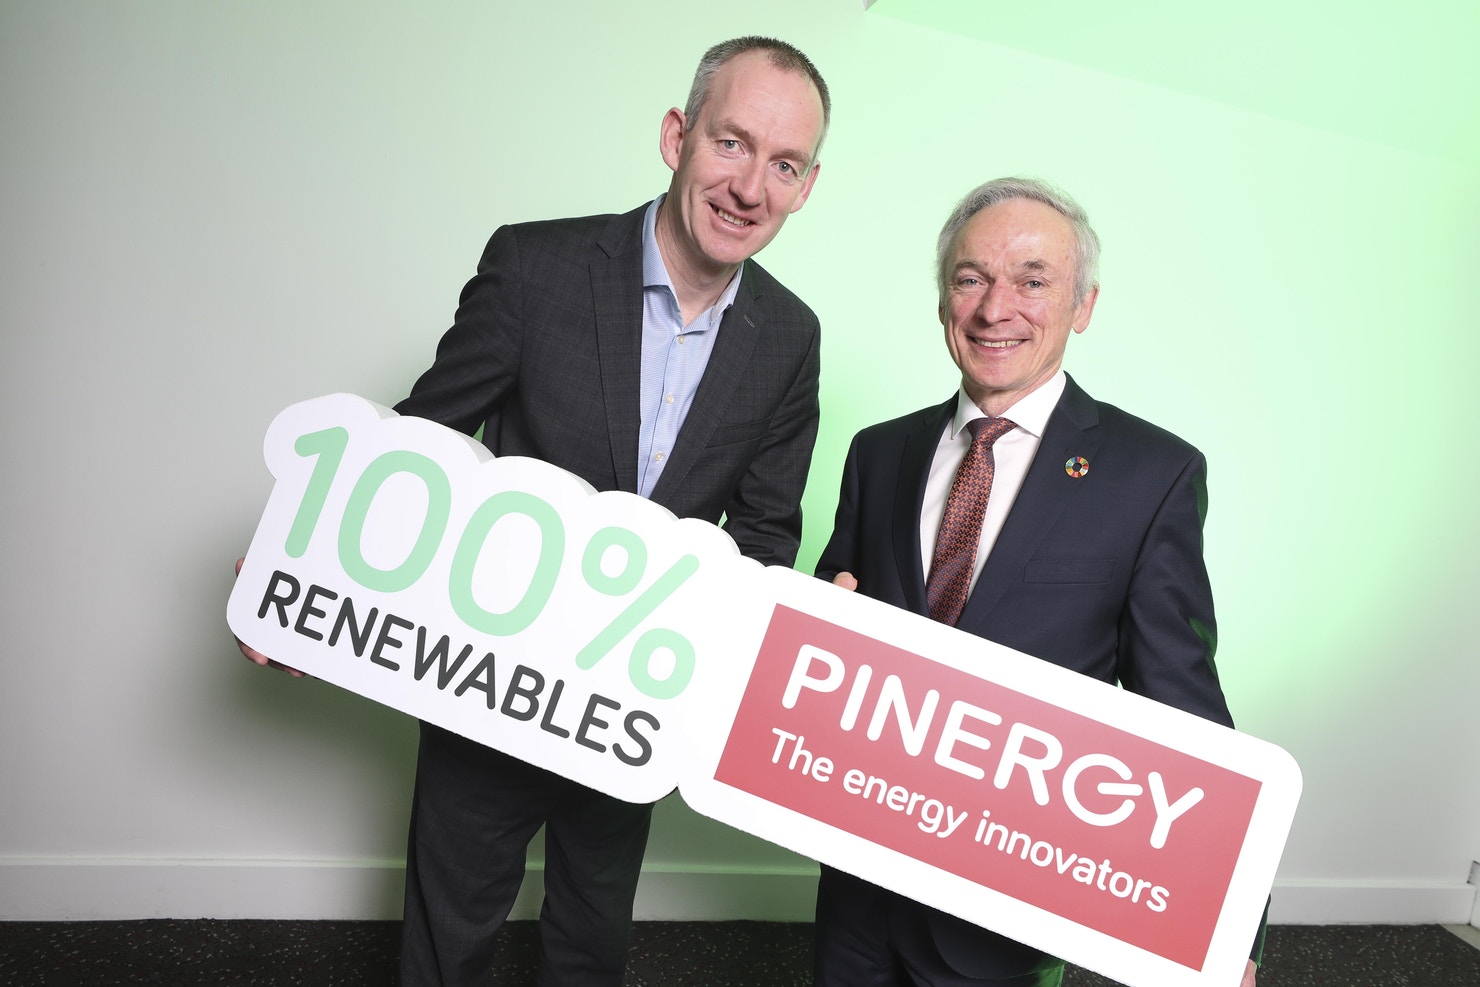 Pinergy announces 100% renewable energy